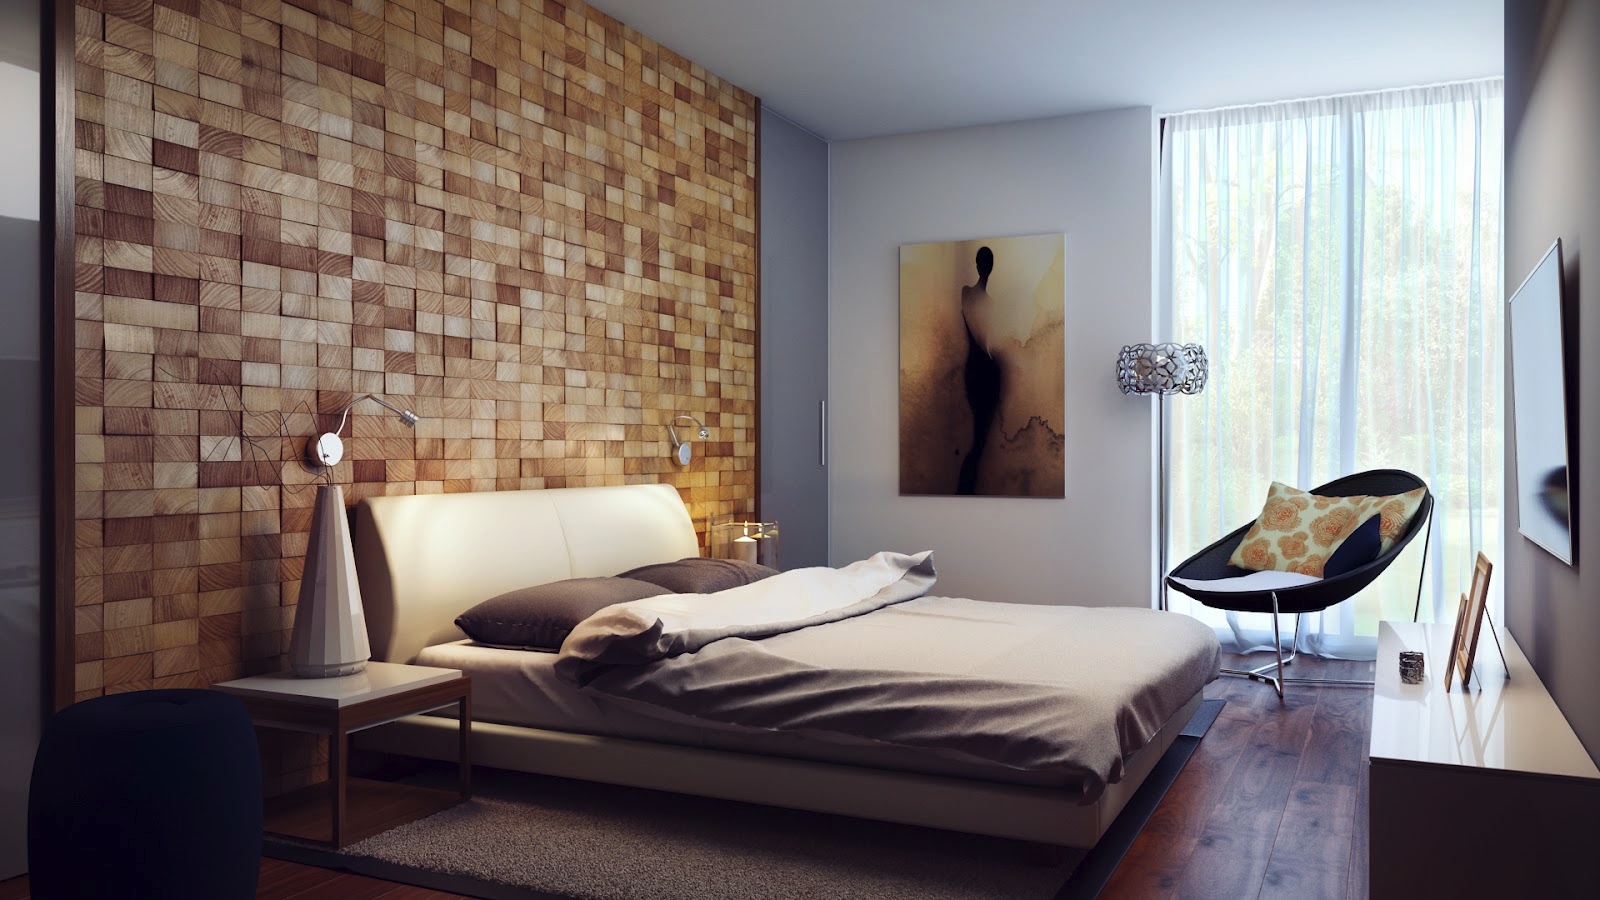 images bedding wood headboard design bedrooms with wooden panel cozy bedroom